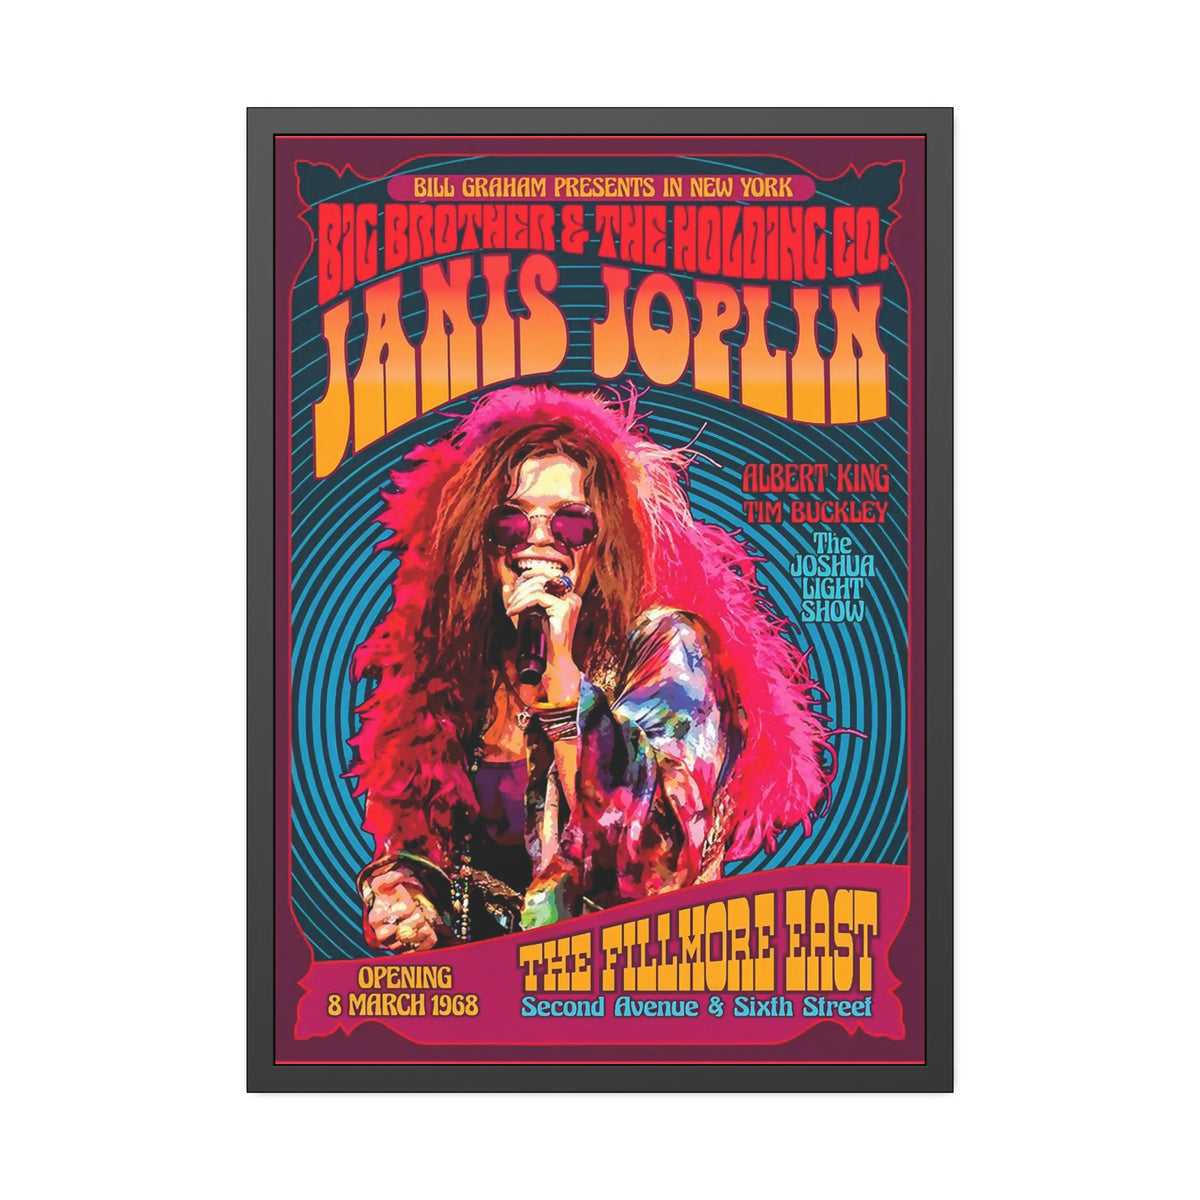 Janis Joplin Concert Poster